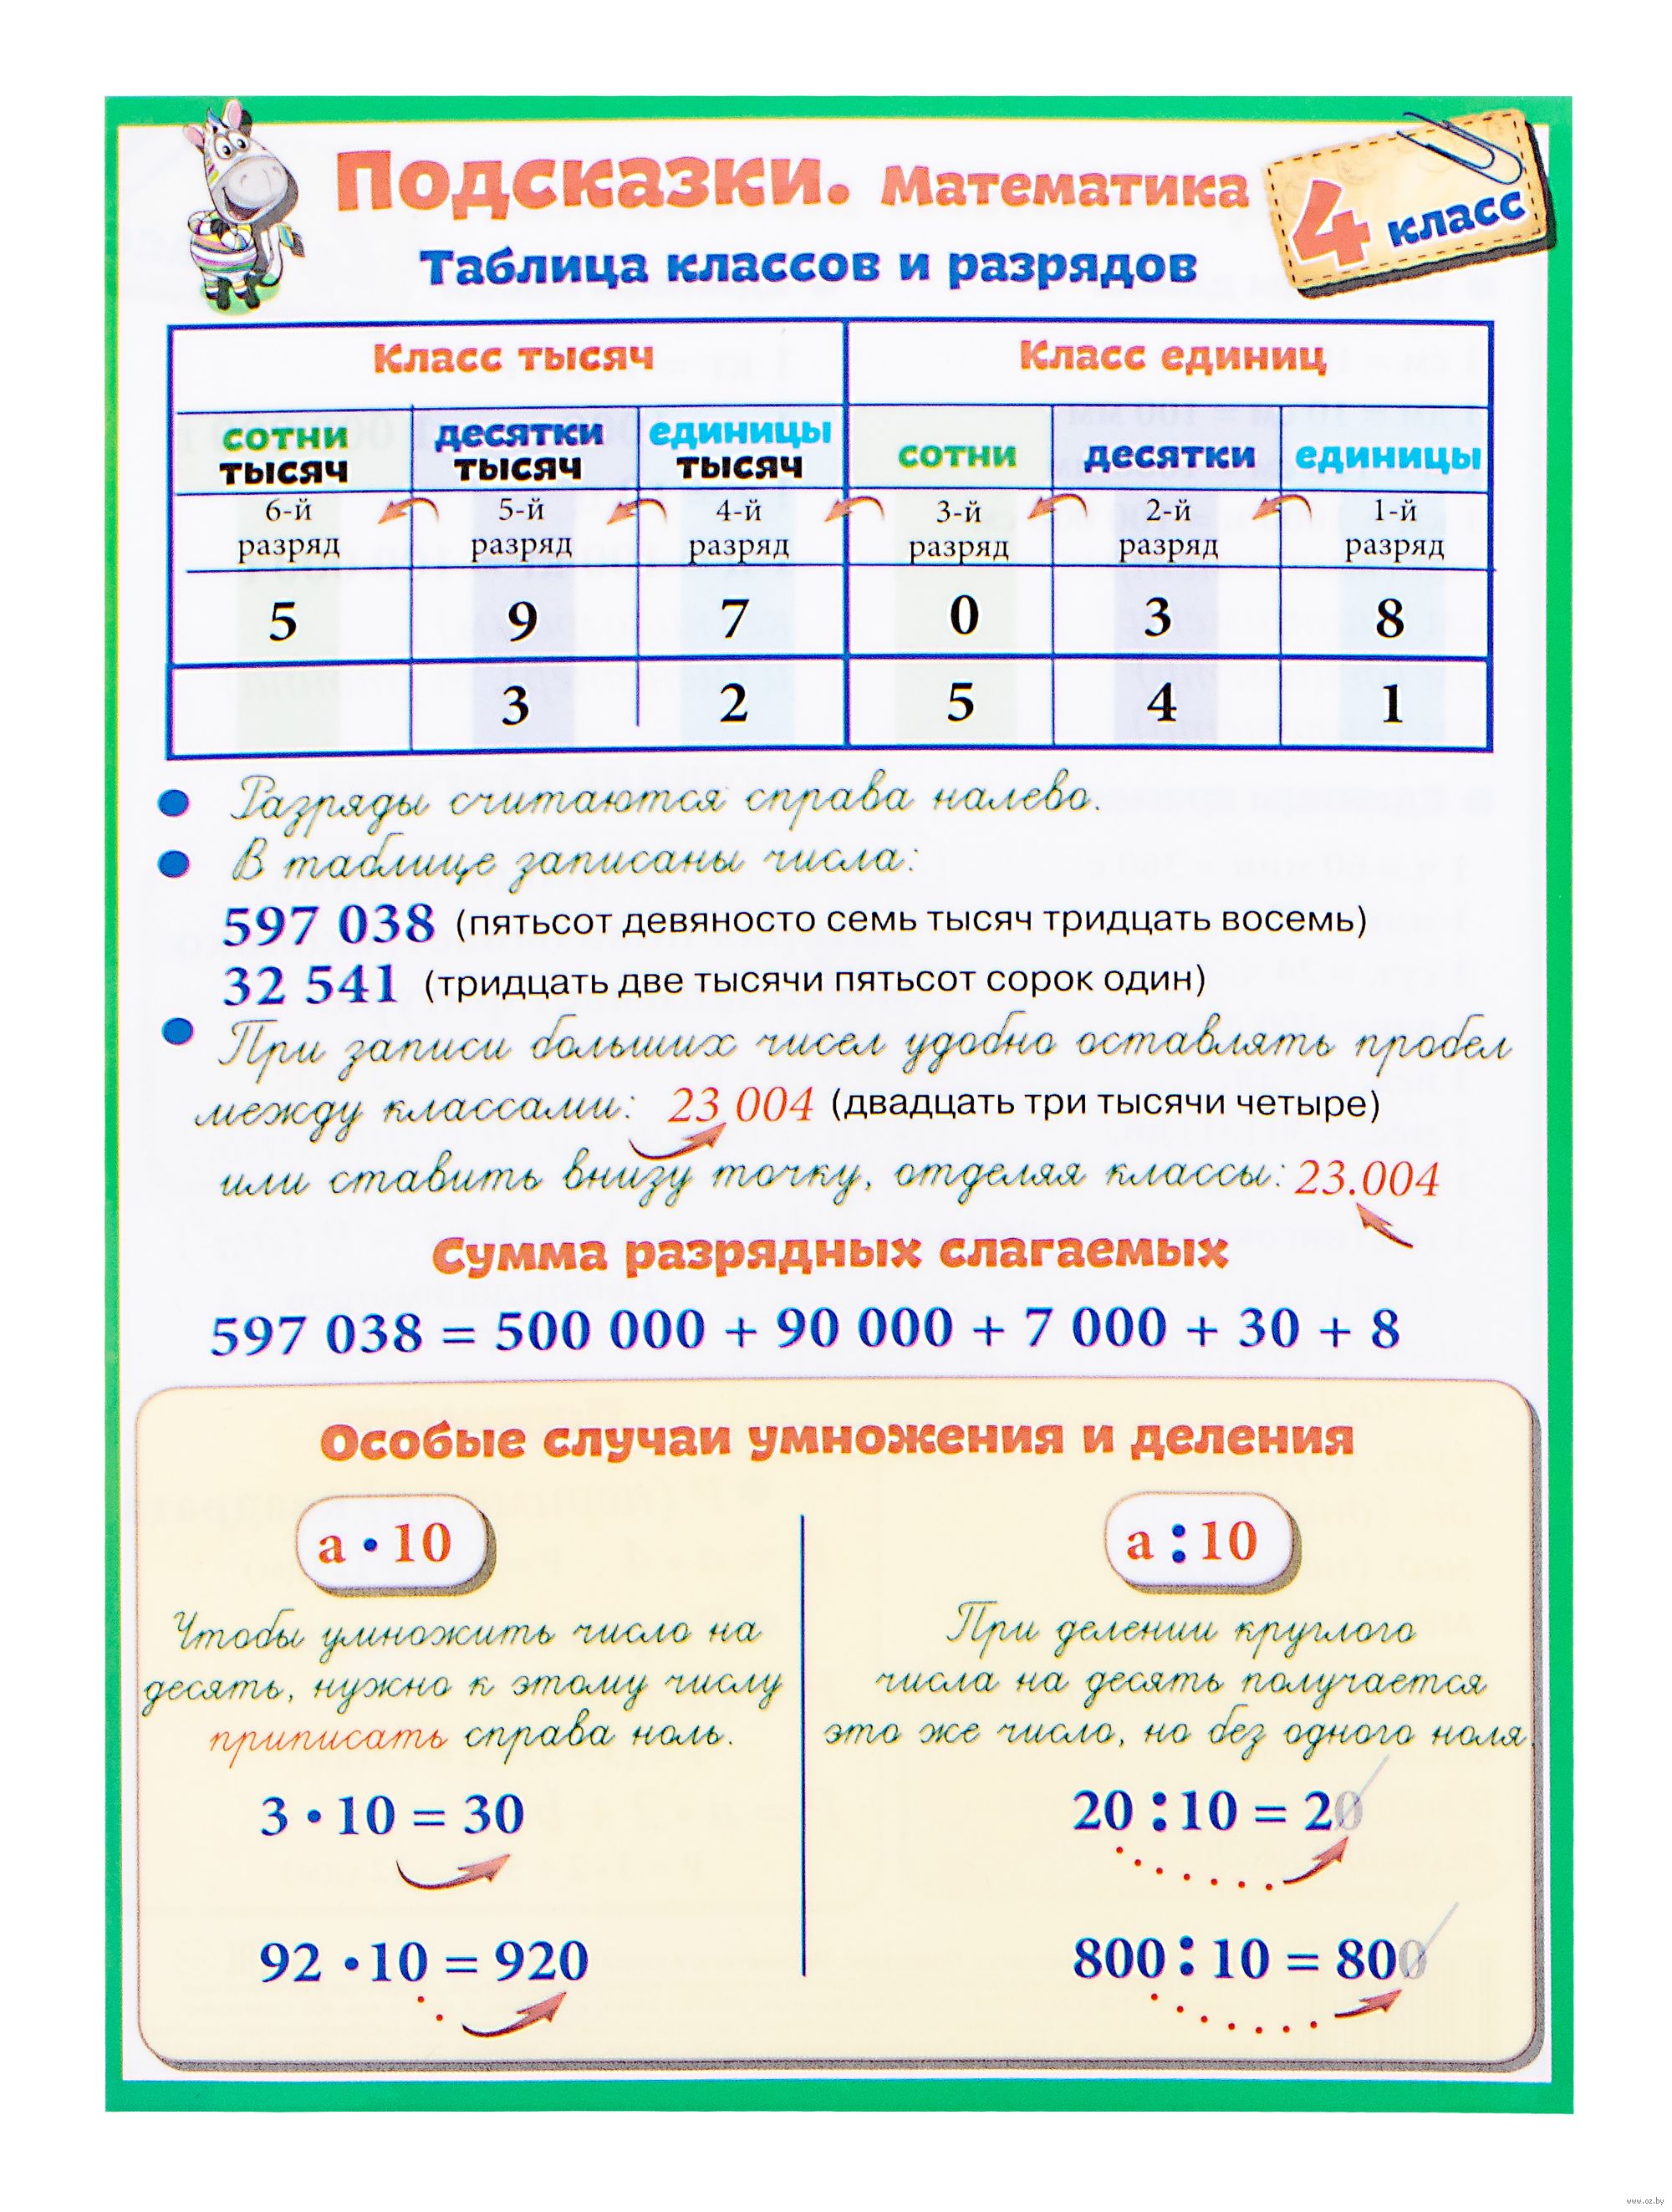 Тесты. Математика. 4 класс (1 часть): Сложение и вычитание в пределах 1000. Прописи